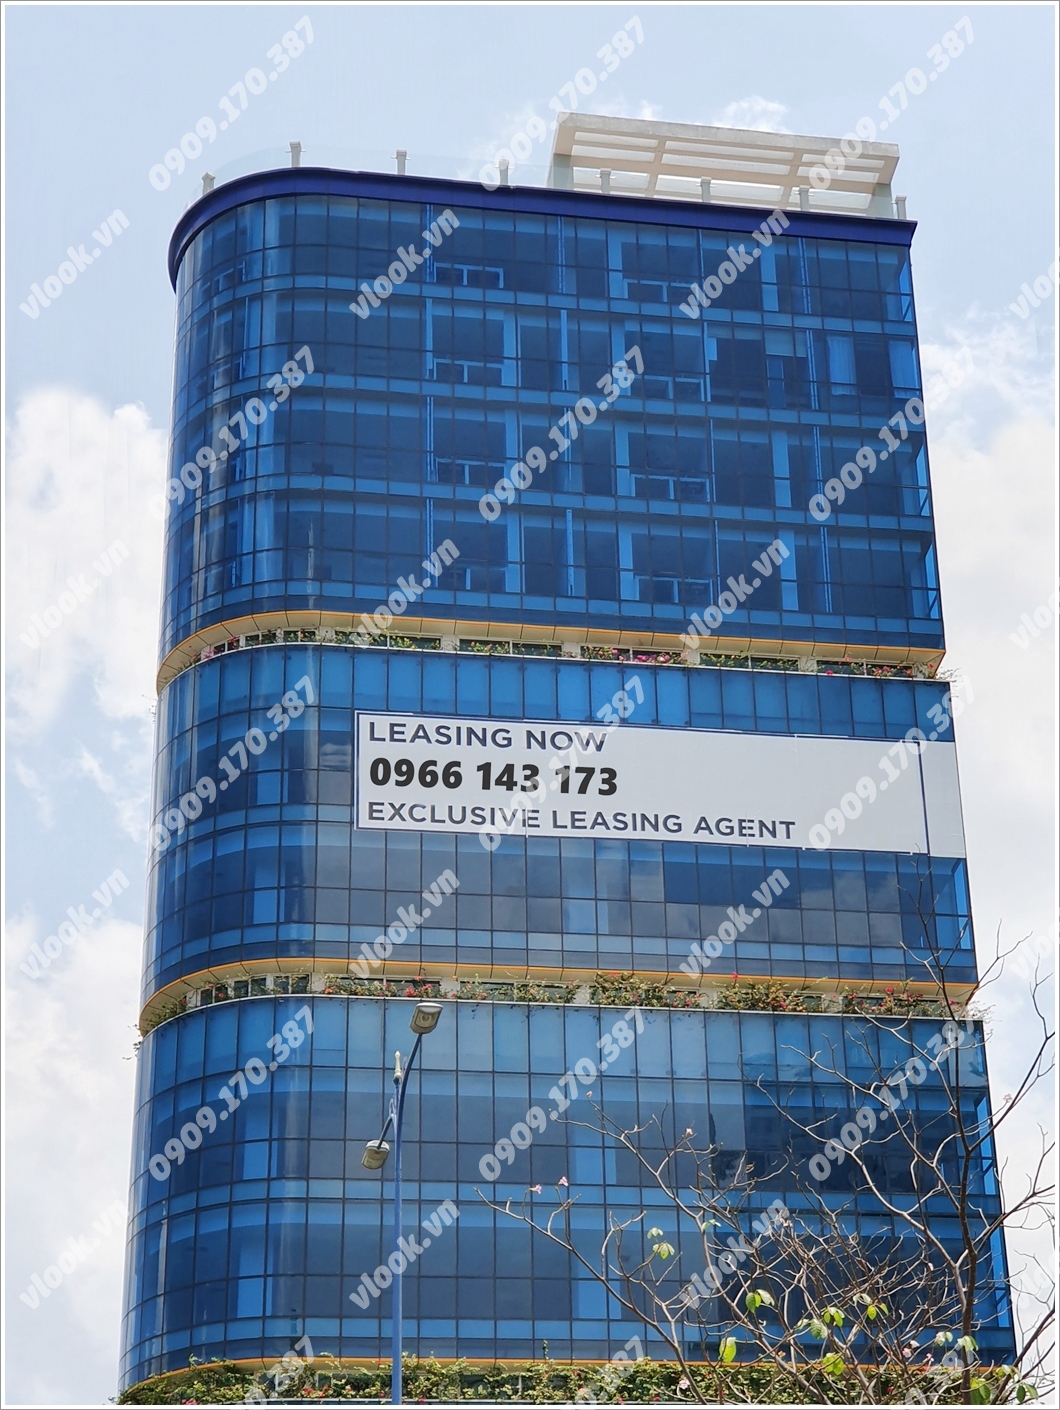 Mặt trước cao ốc cho thuê văn phòng C.T Plaza, Võ Văn Kiệt, Quận 1, TPHCM - vlook.vn